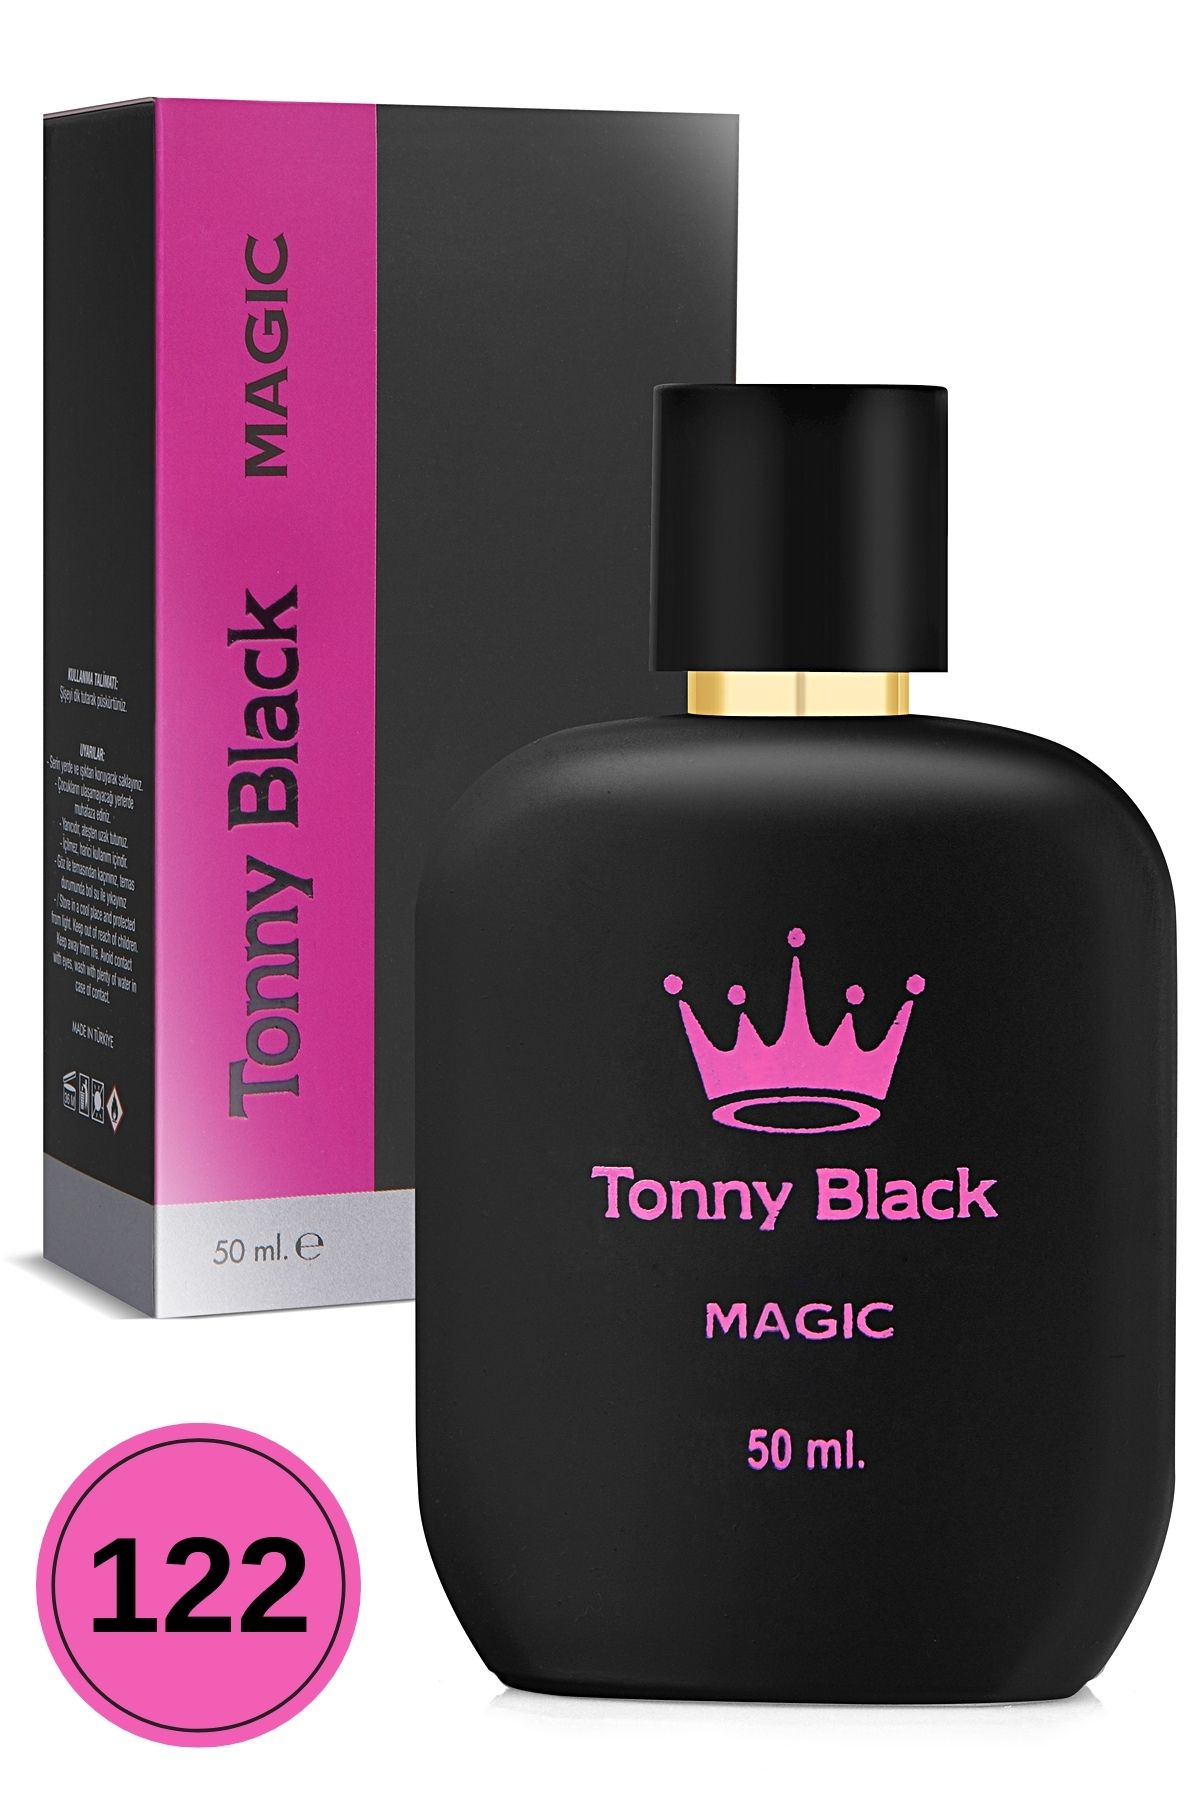 Tonny Black Orijinal Kadın 122 Özel Seri Uzun Süre Kalıcı Etkili Magic Özel Serisi Lüks Kadın Parfüm 50ml